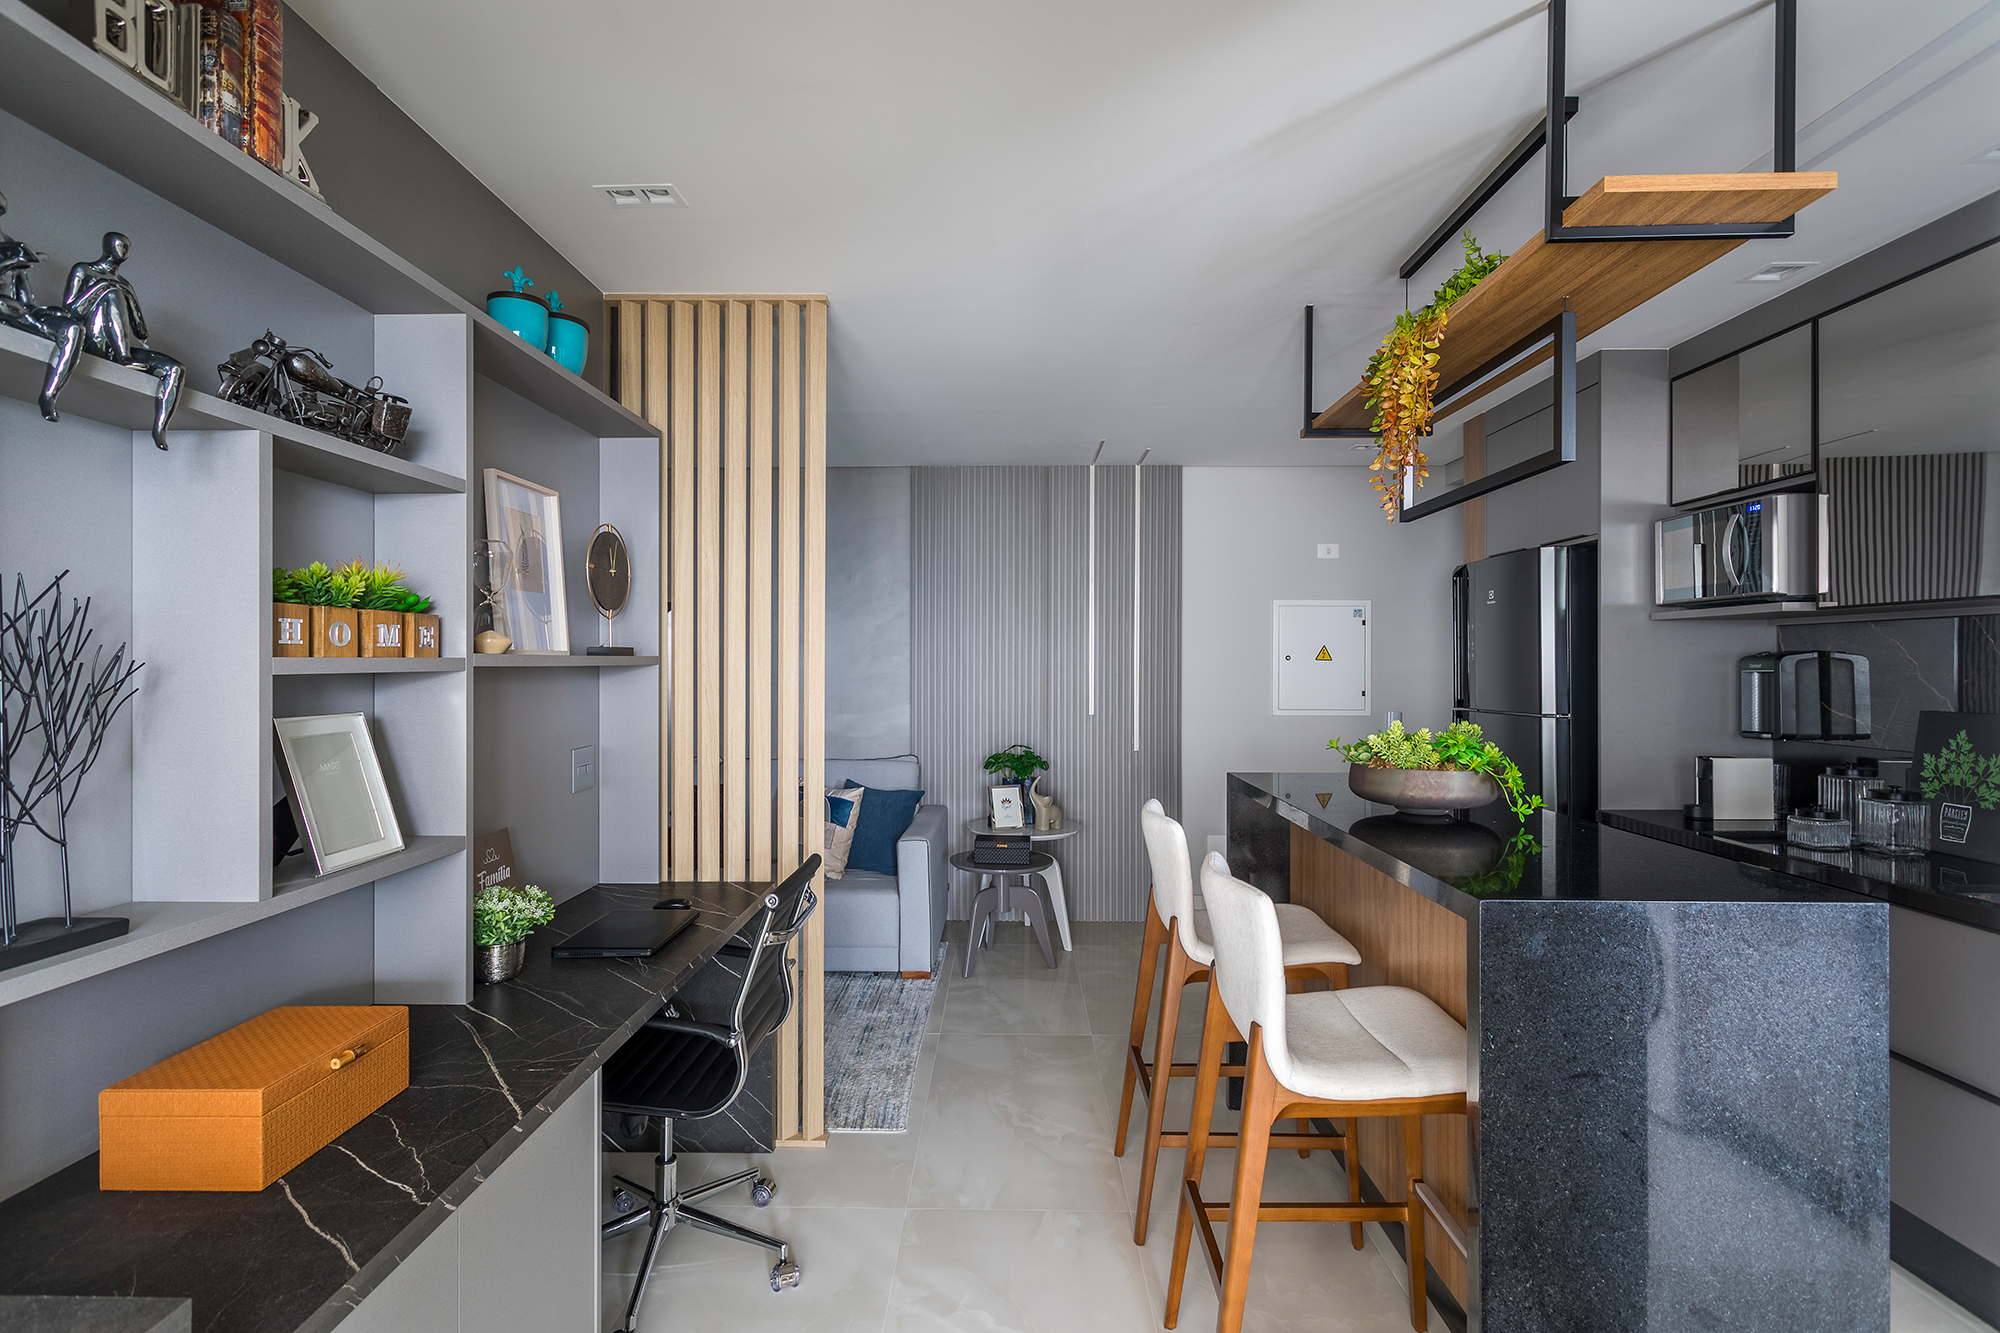  82 m² suurune korter vertikaalse aiaga koridoris ja saarega köögis